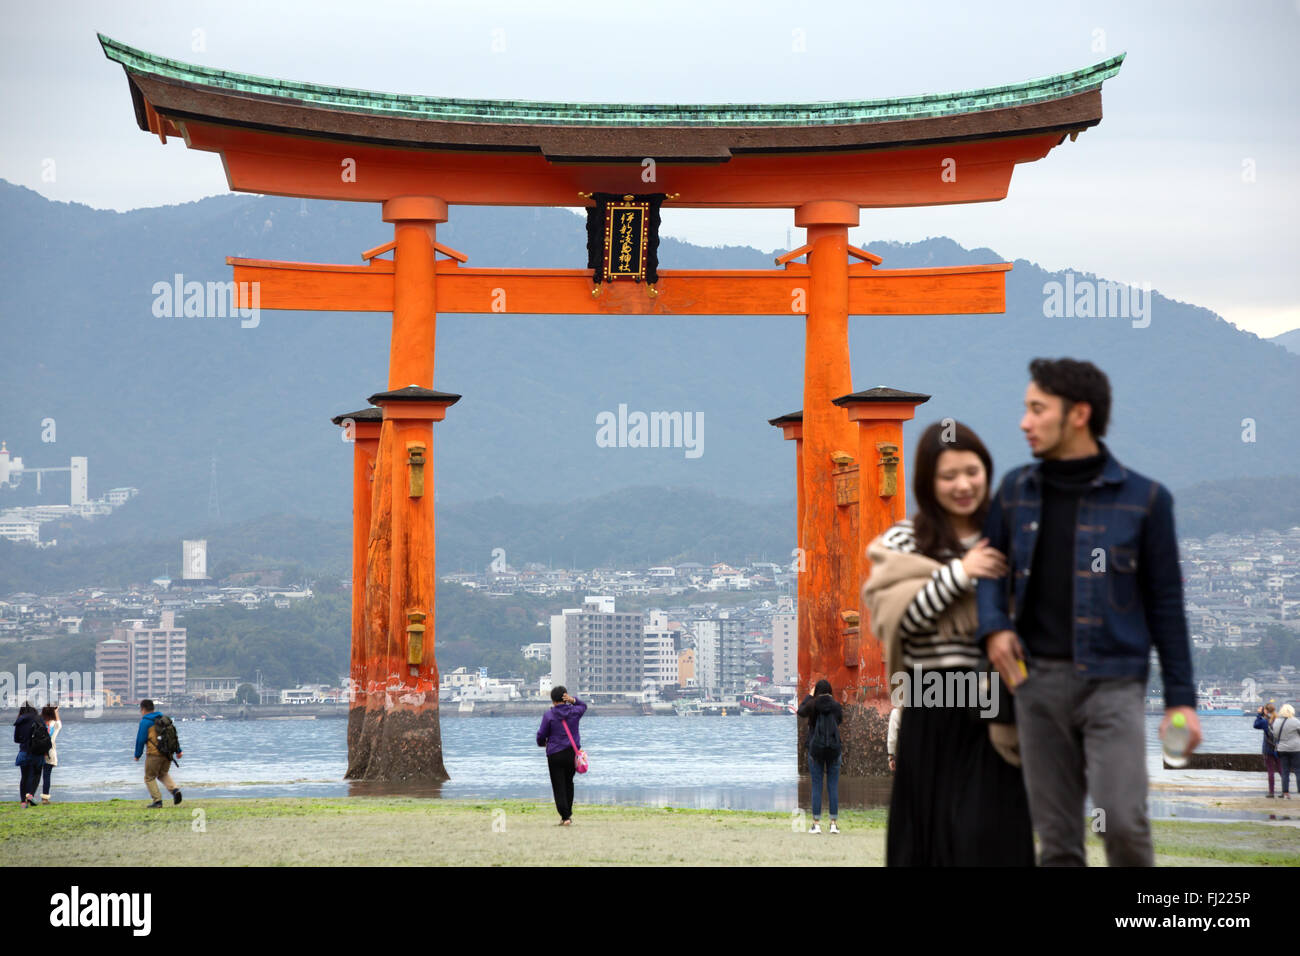 Sanctuaire d'Itsukushima est un temple Shinto sur l'île d'Itsukushima (populairement connu comme Miyajima), mieux connu pour son torii flottant. Banque D'Images